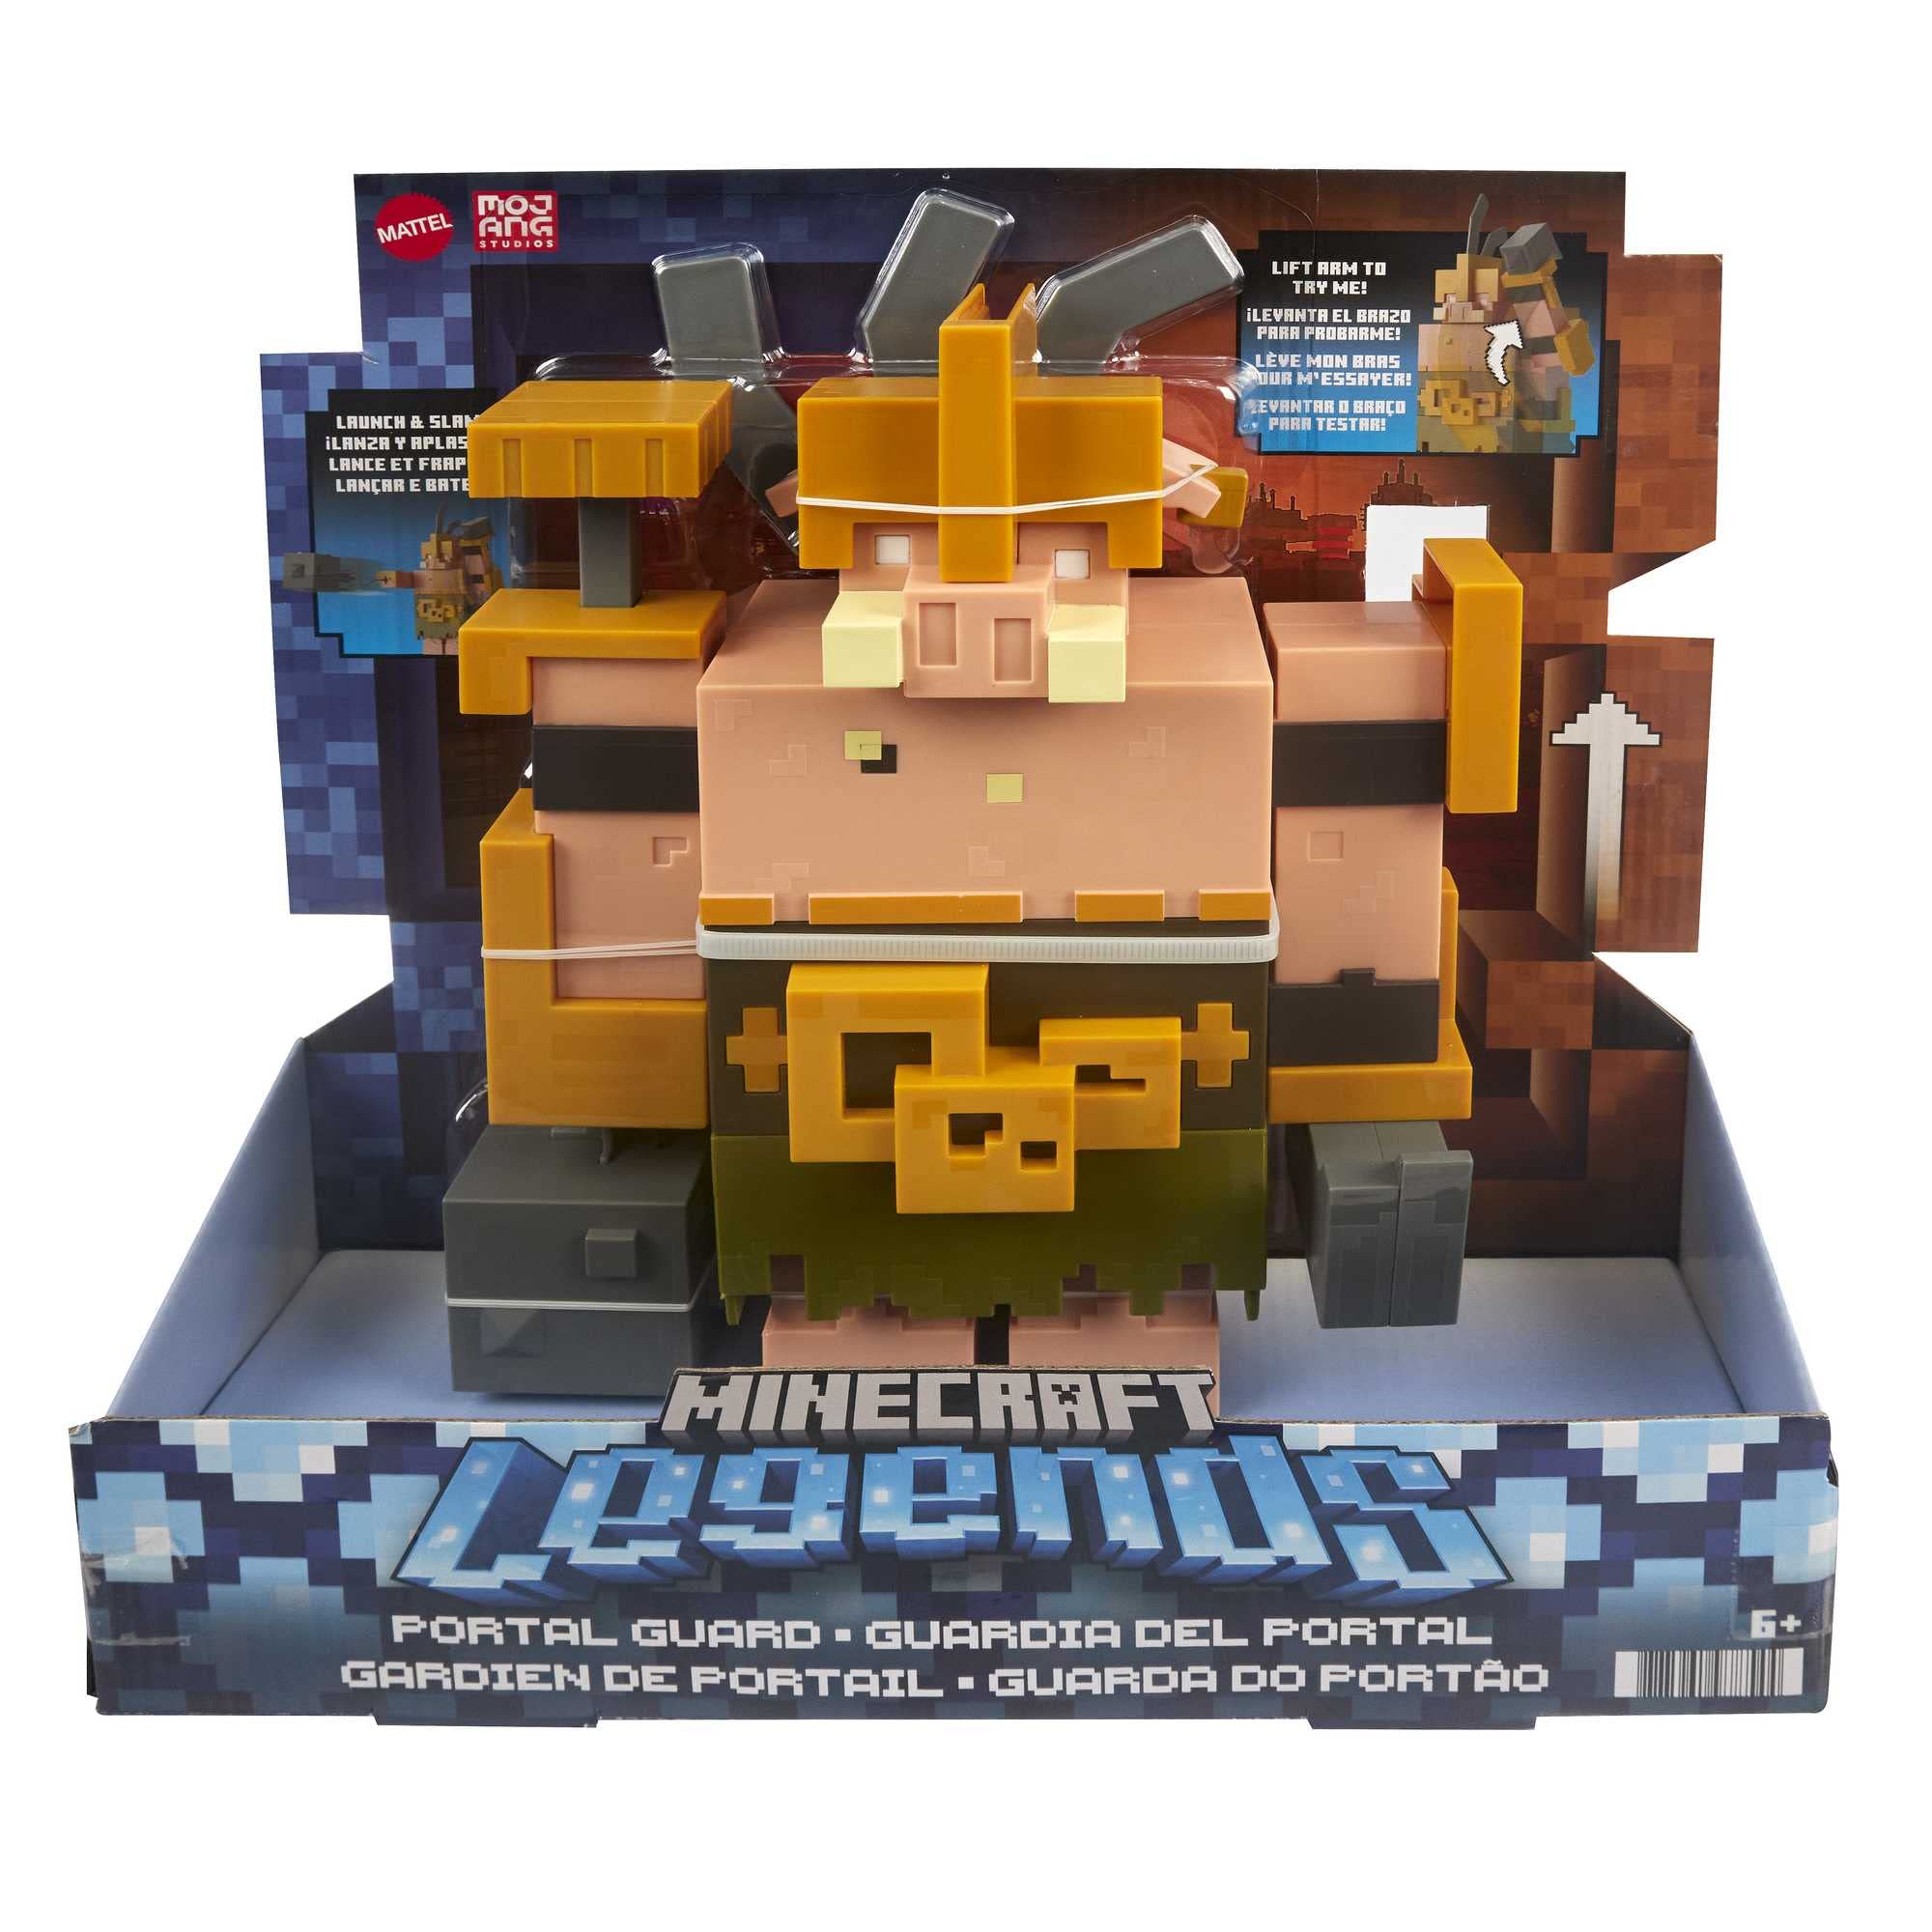 Minecraft - Personaggio Guardiano del Portale con mossa di attacco e accessorio Action figure da collezione Legends alta più di 8 cm giocattolo per bambini 6+ anni GYR77